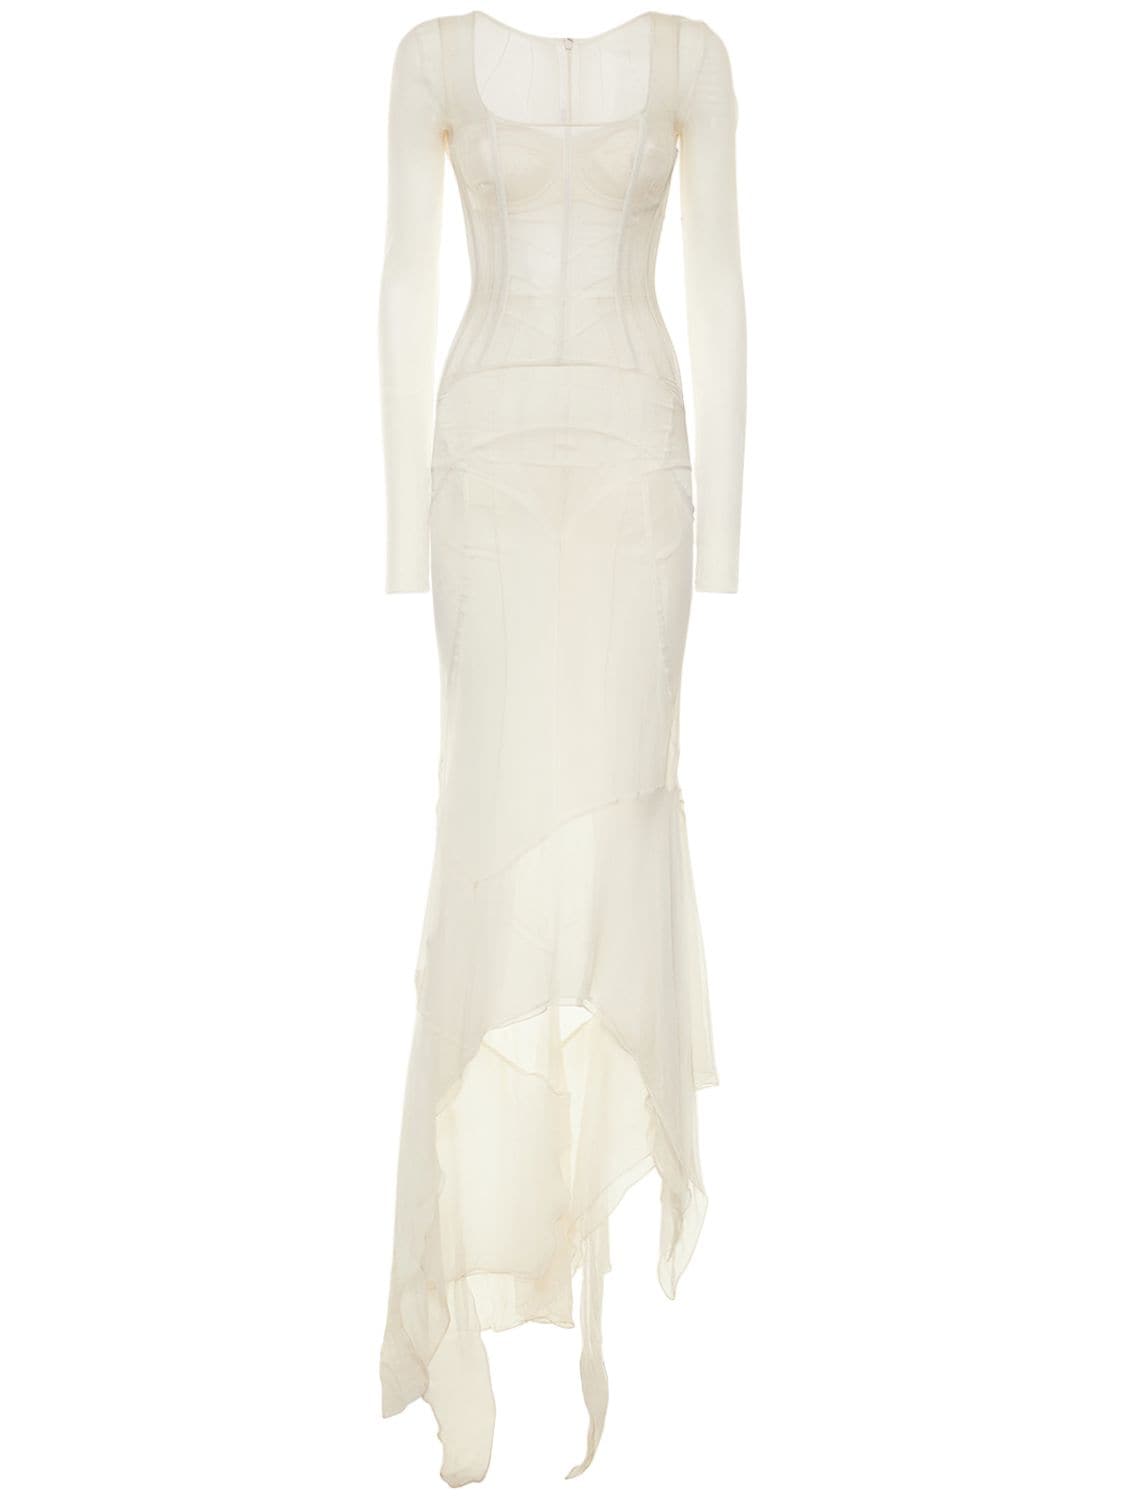 Image of Silk Chiffon Long Corset Dress